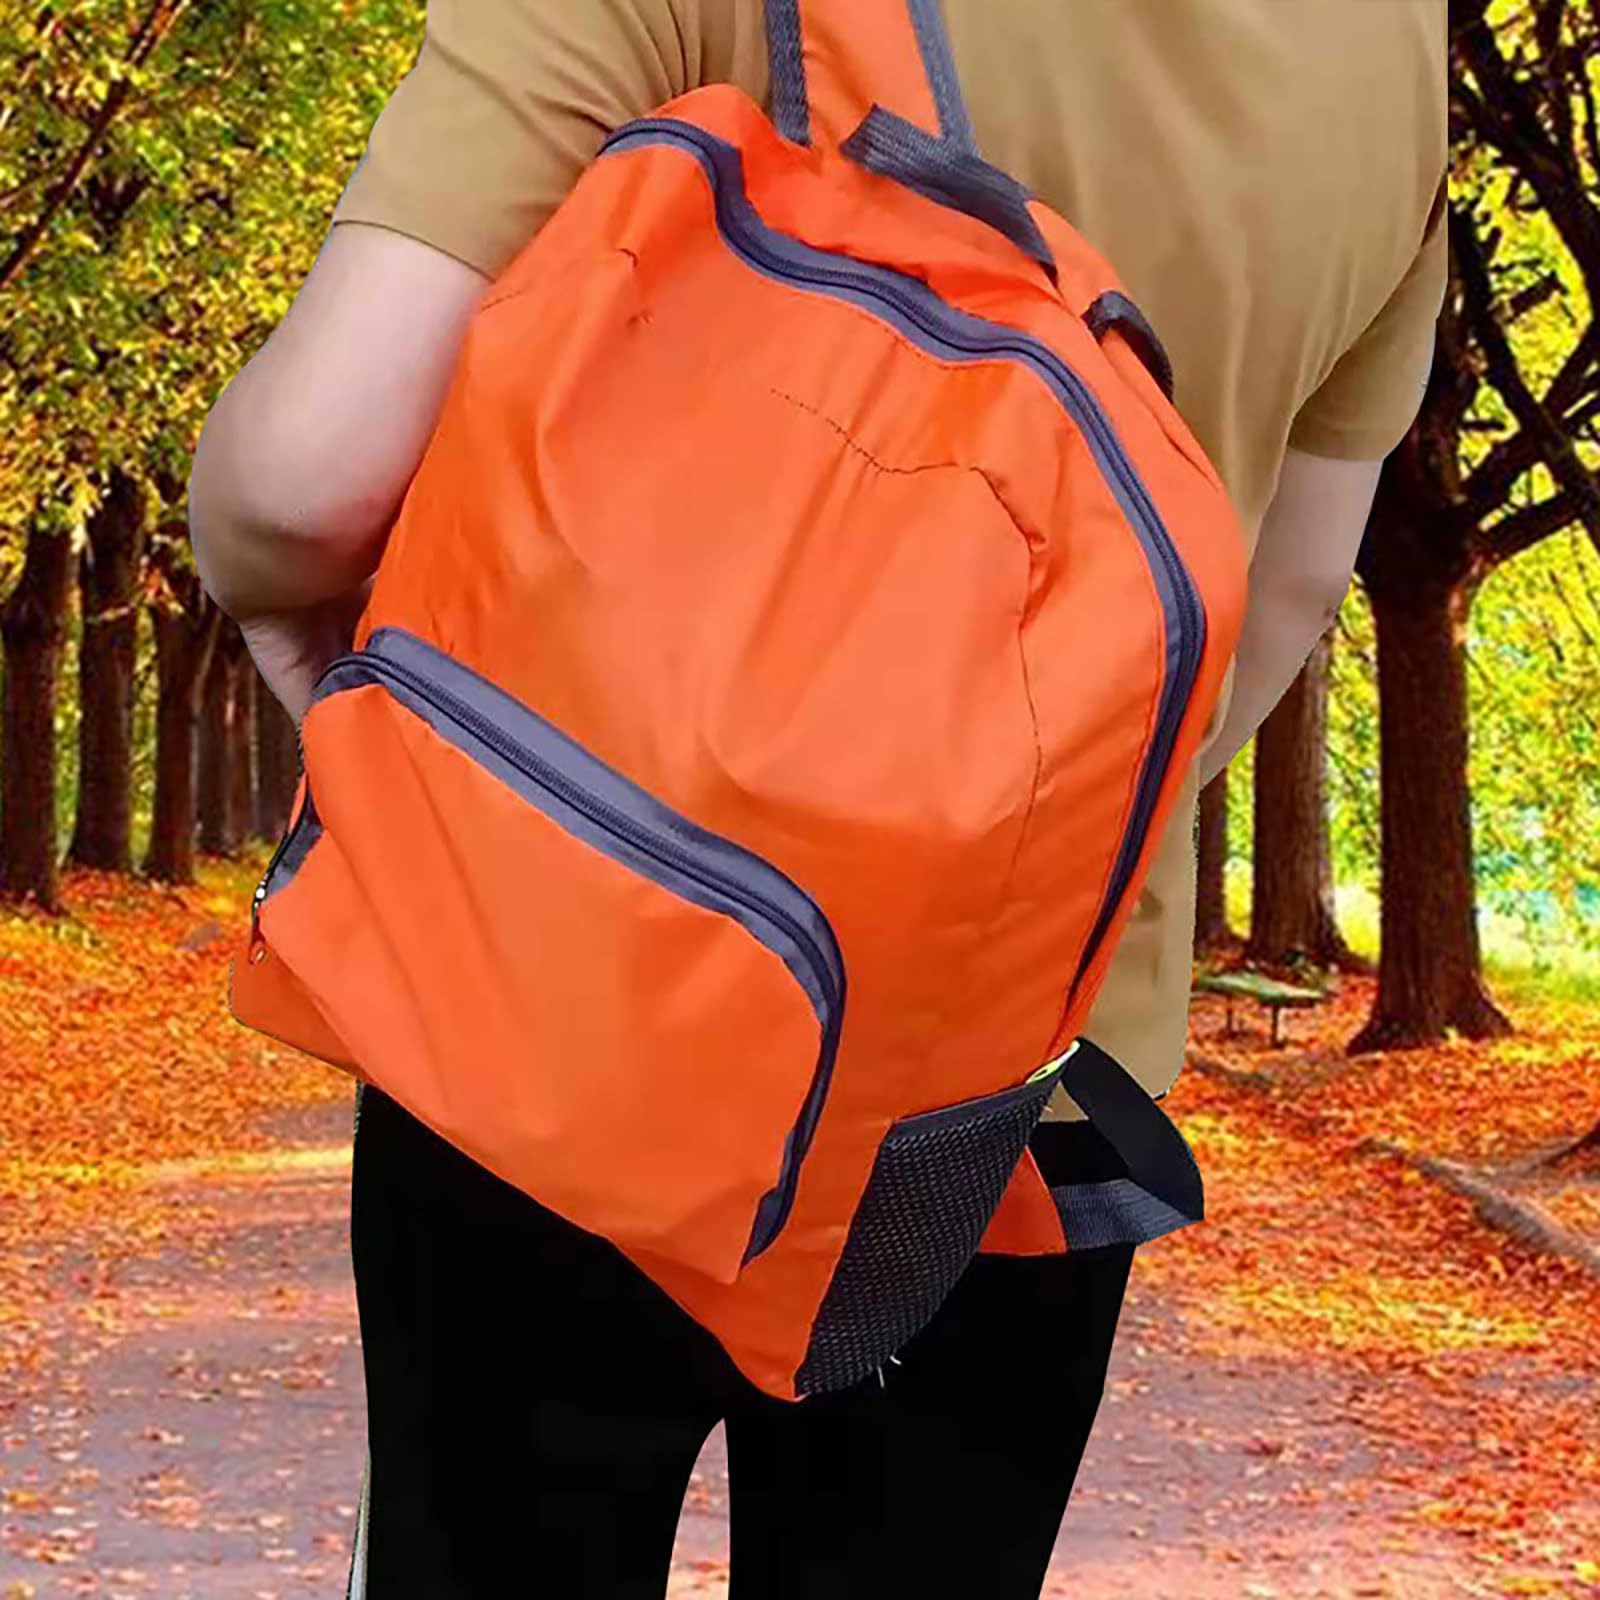 YJHKMR Lightweight Foldable Backpack Handy Packable Travel Hiking Daypack Waterproof Shoulder Bag for Women Men